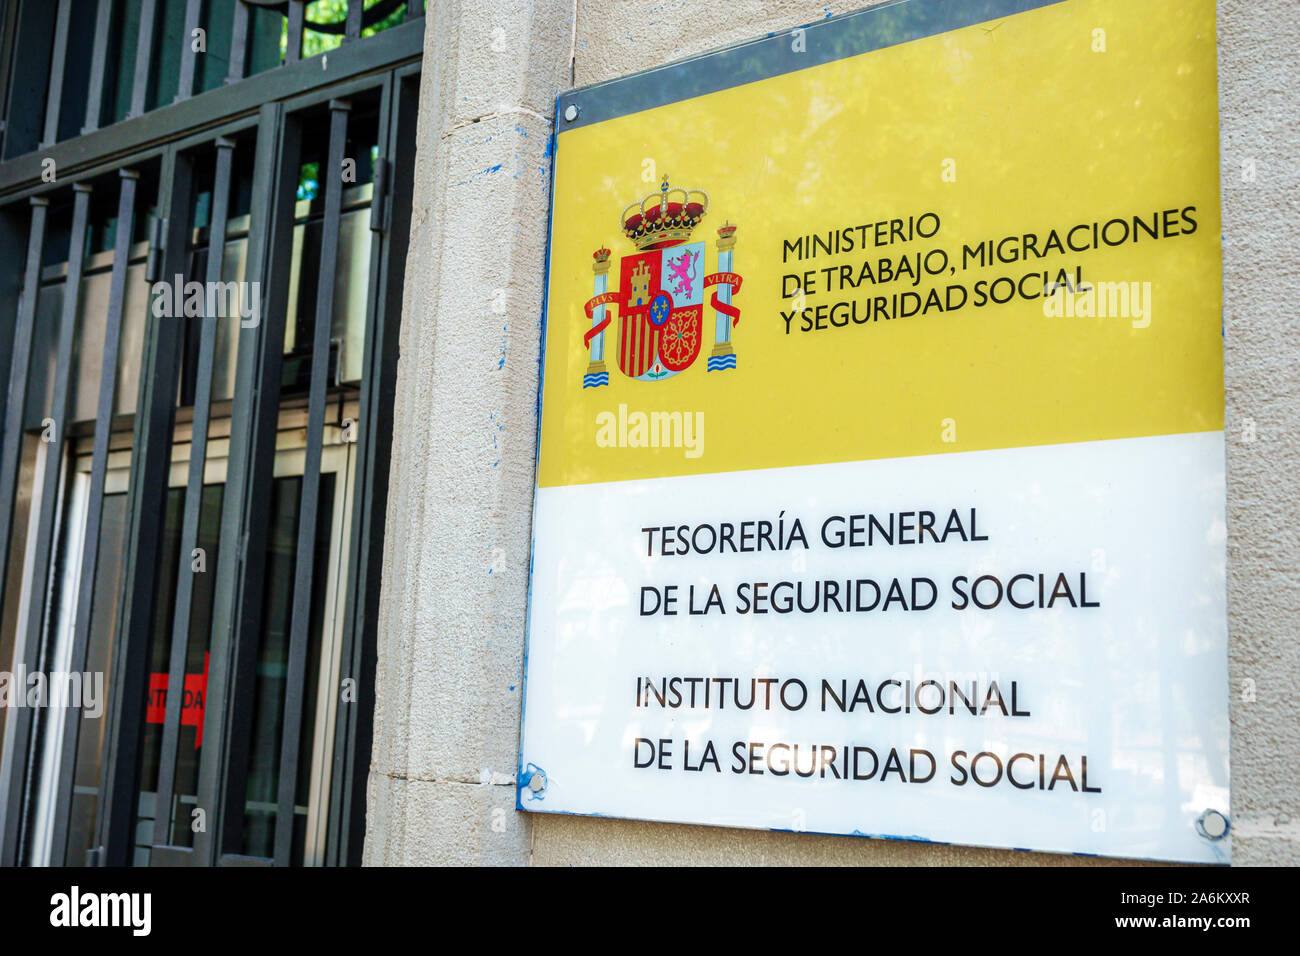 Tarragona Spain Hispanic Catalonia Ministry of Labor,Migrations & Social Security,Ministerio de Trabajo,Migraciones y Seguridad Social,government buil Stock Photo